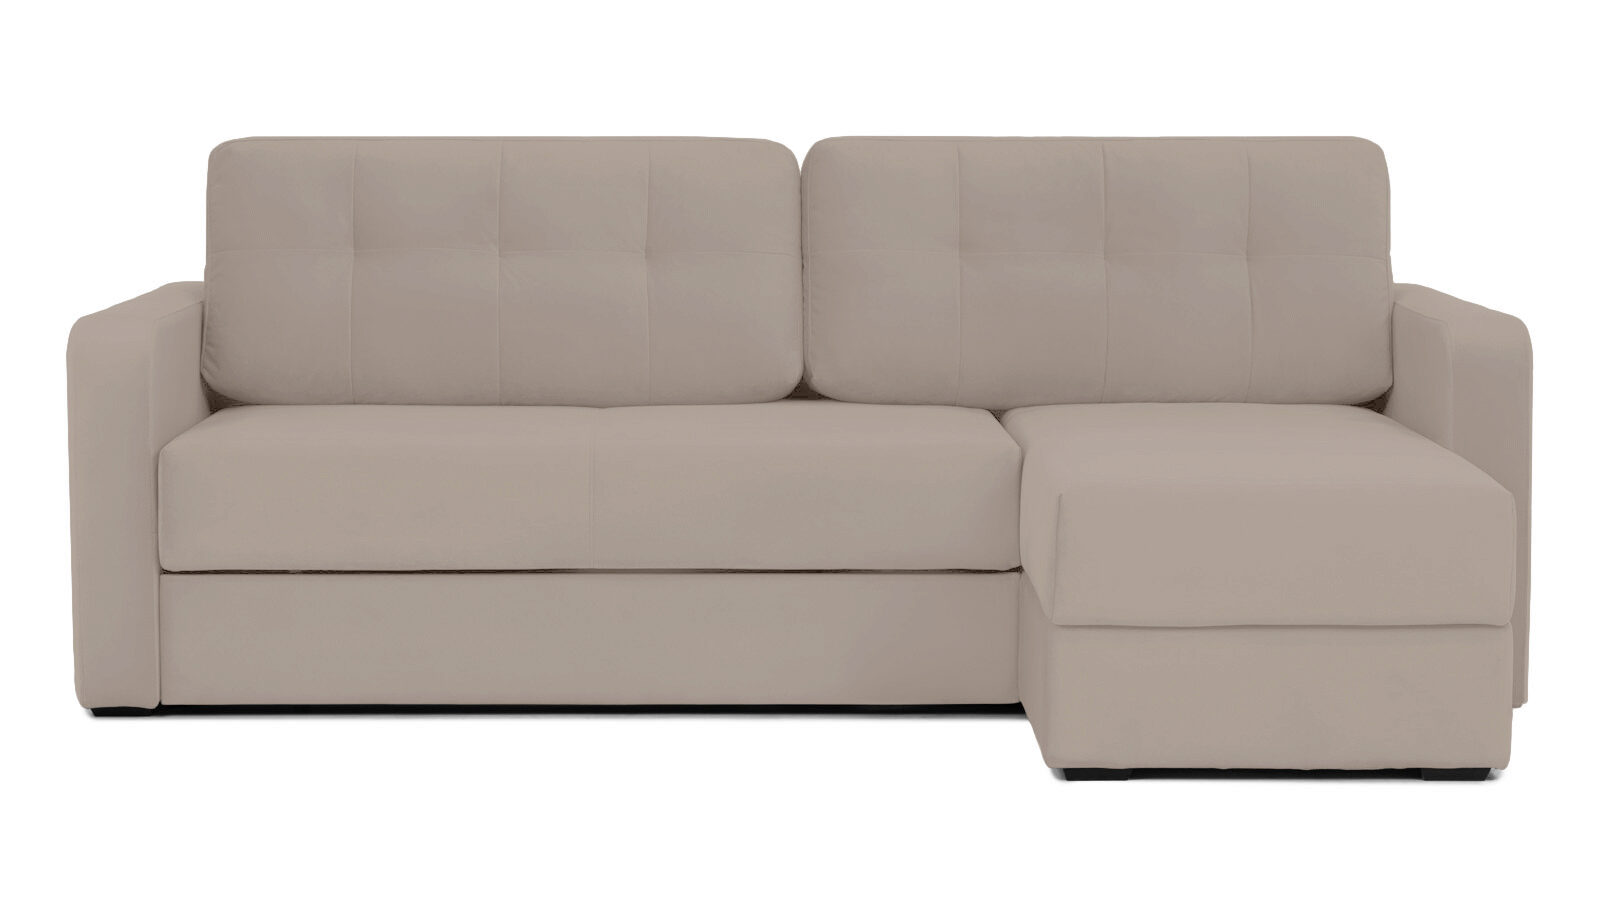 Угловой диван Loko Pro с широкими подлокотниками, с матрасом комбинированной жесткости Askona